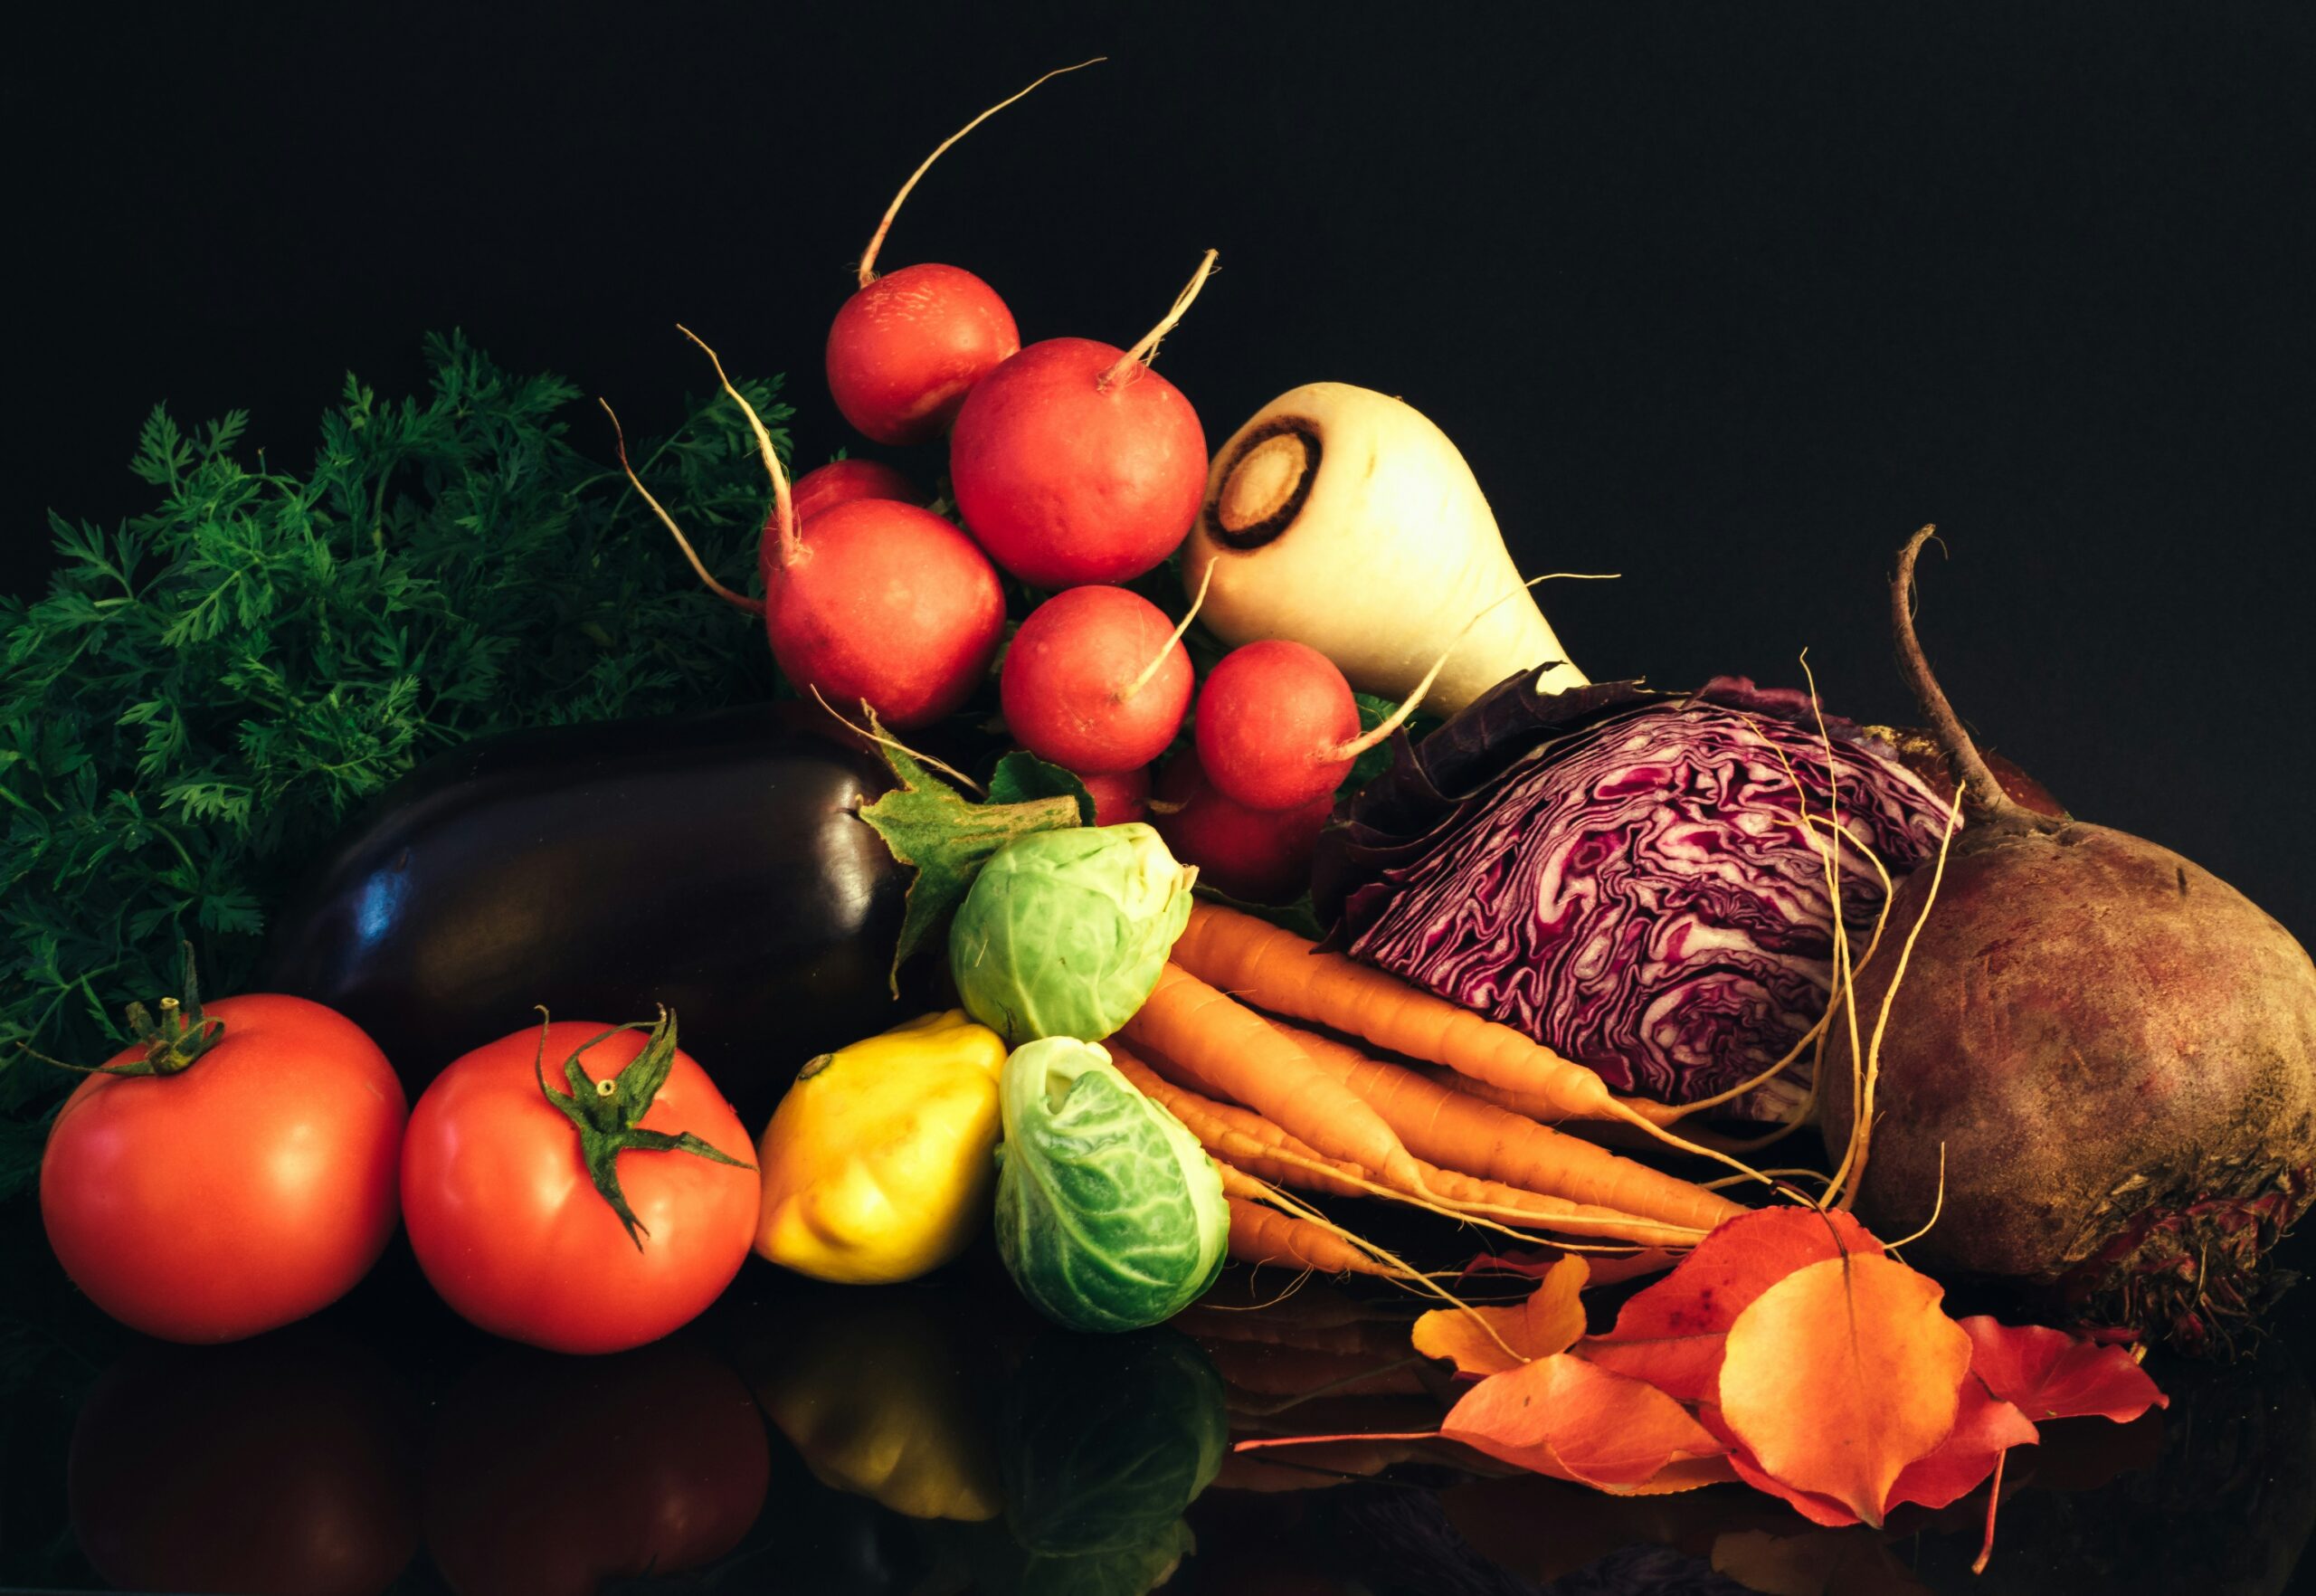 découvrez une large sélection de légumes frais, savoureux et de qualité. trouvez tous vos légumes préférés pour une cuisine saine et délicieuse.